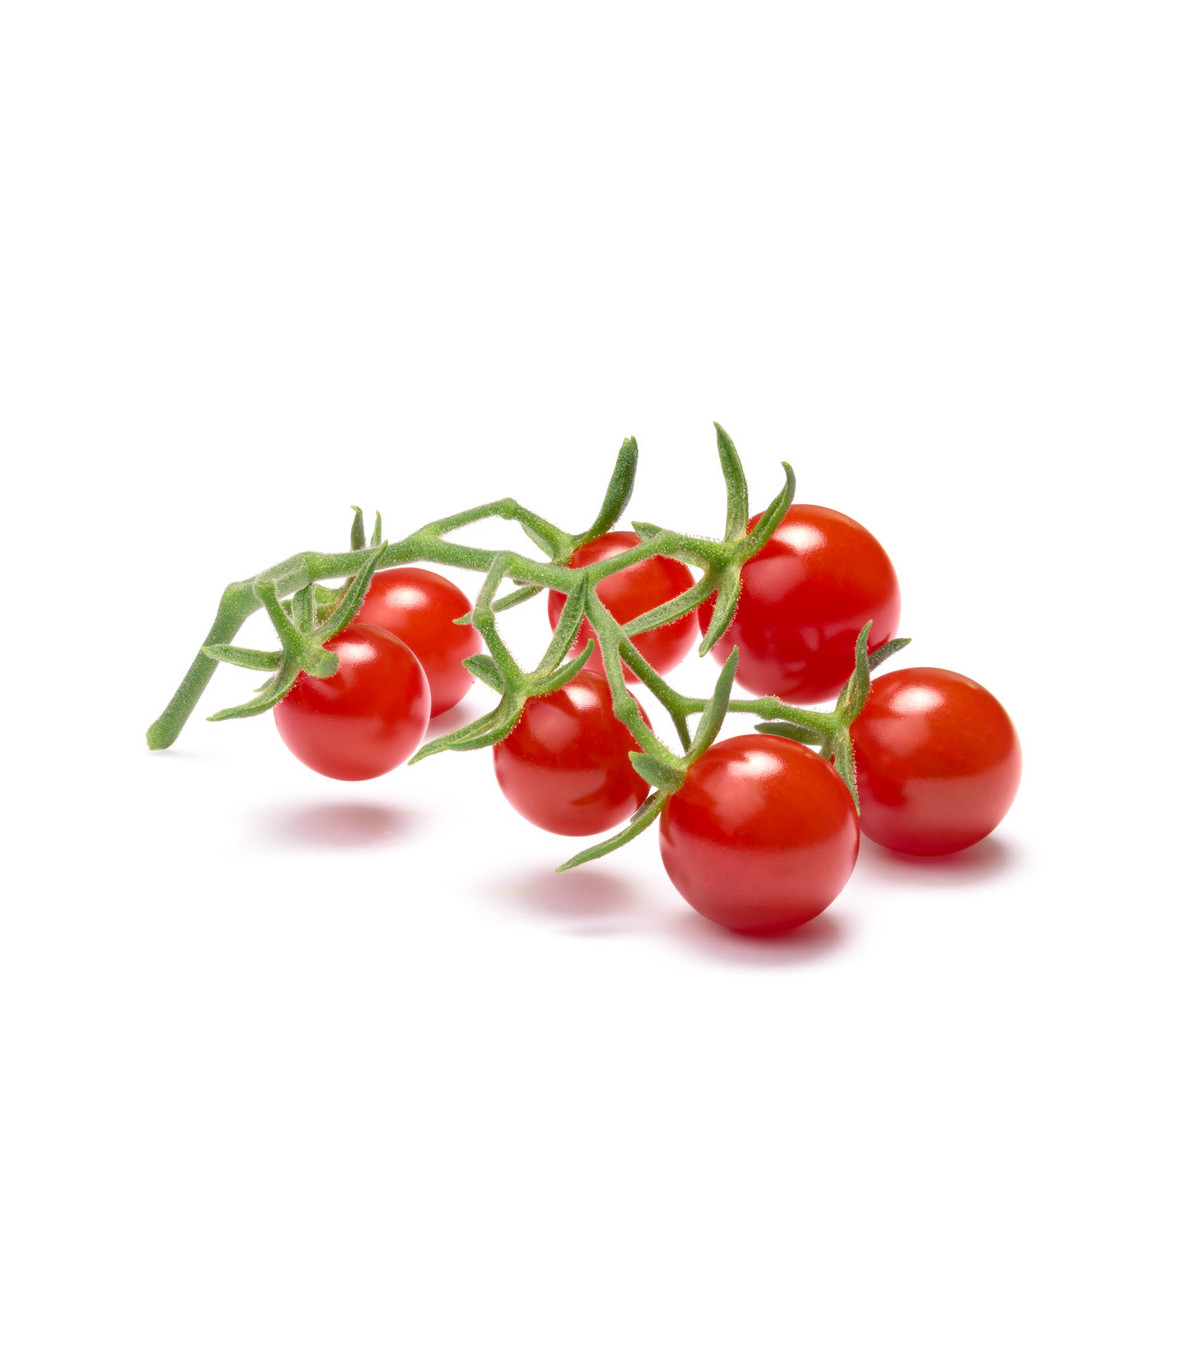 Divoká rajčátka - Solanum pimpinellifolium - osivo rajčat - 6 ks